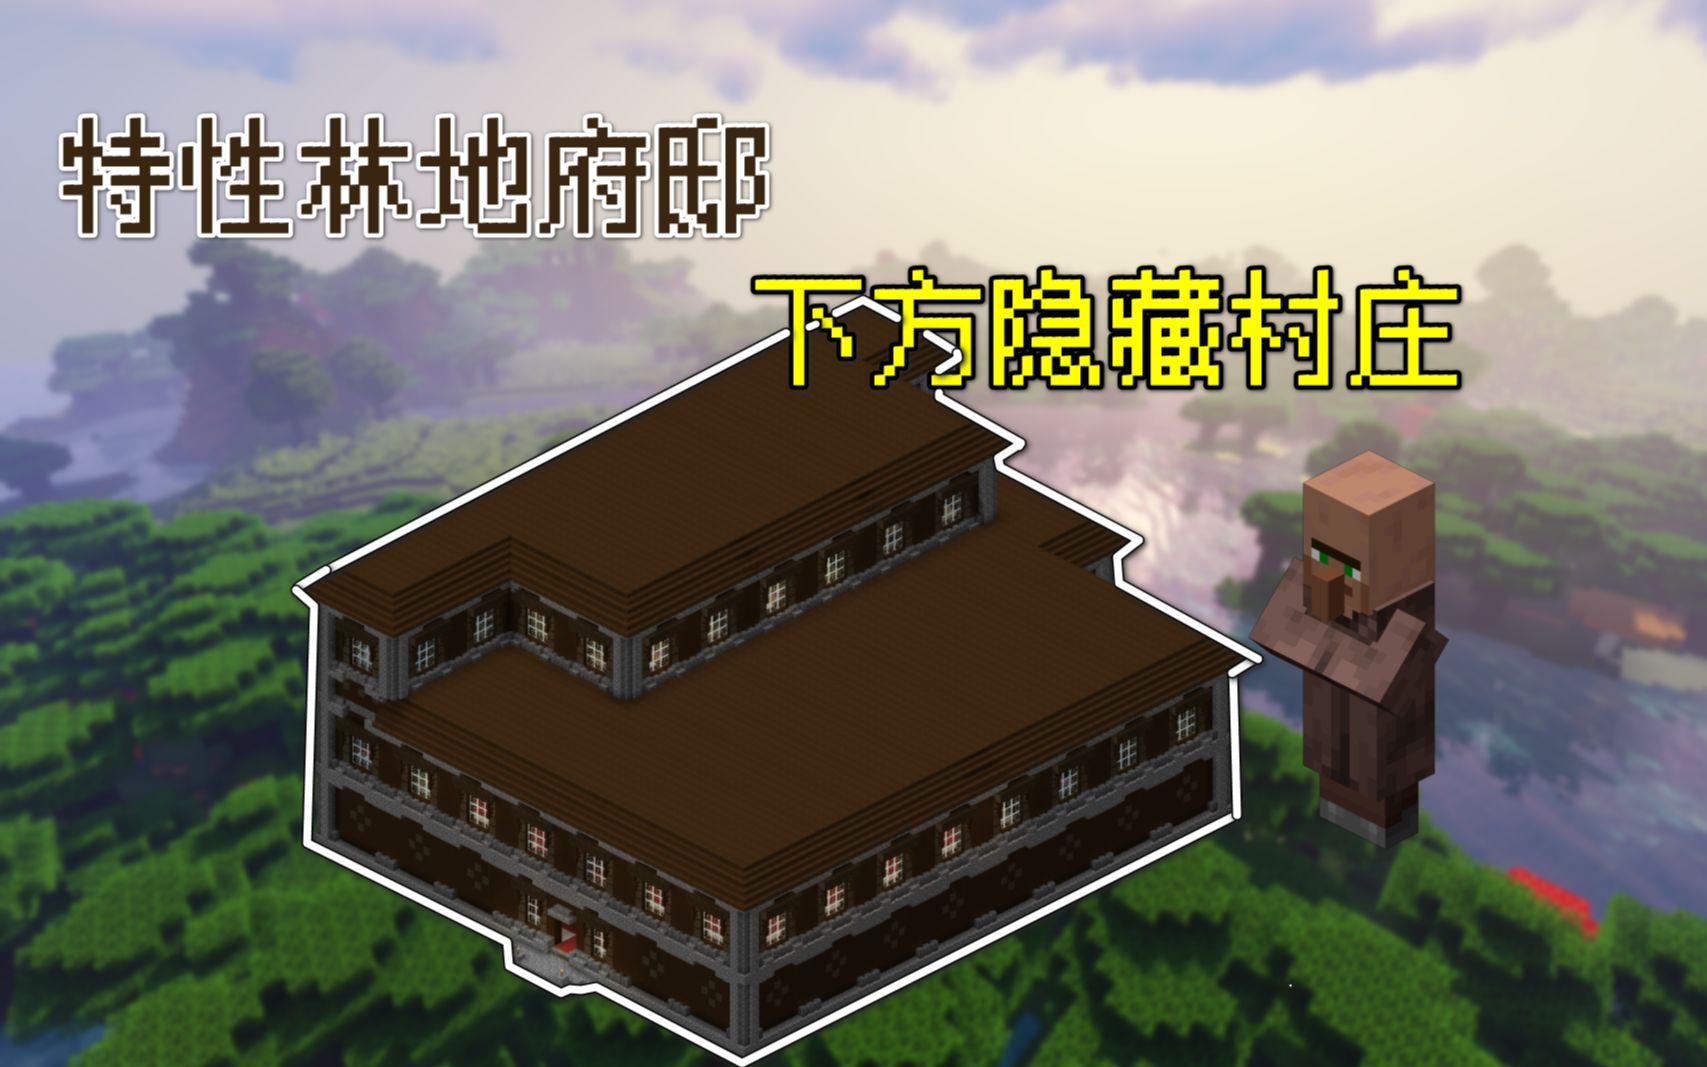 我在改造丛林府邸发现屋顶上面有箱子(不是我放的)-小米游戏中心